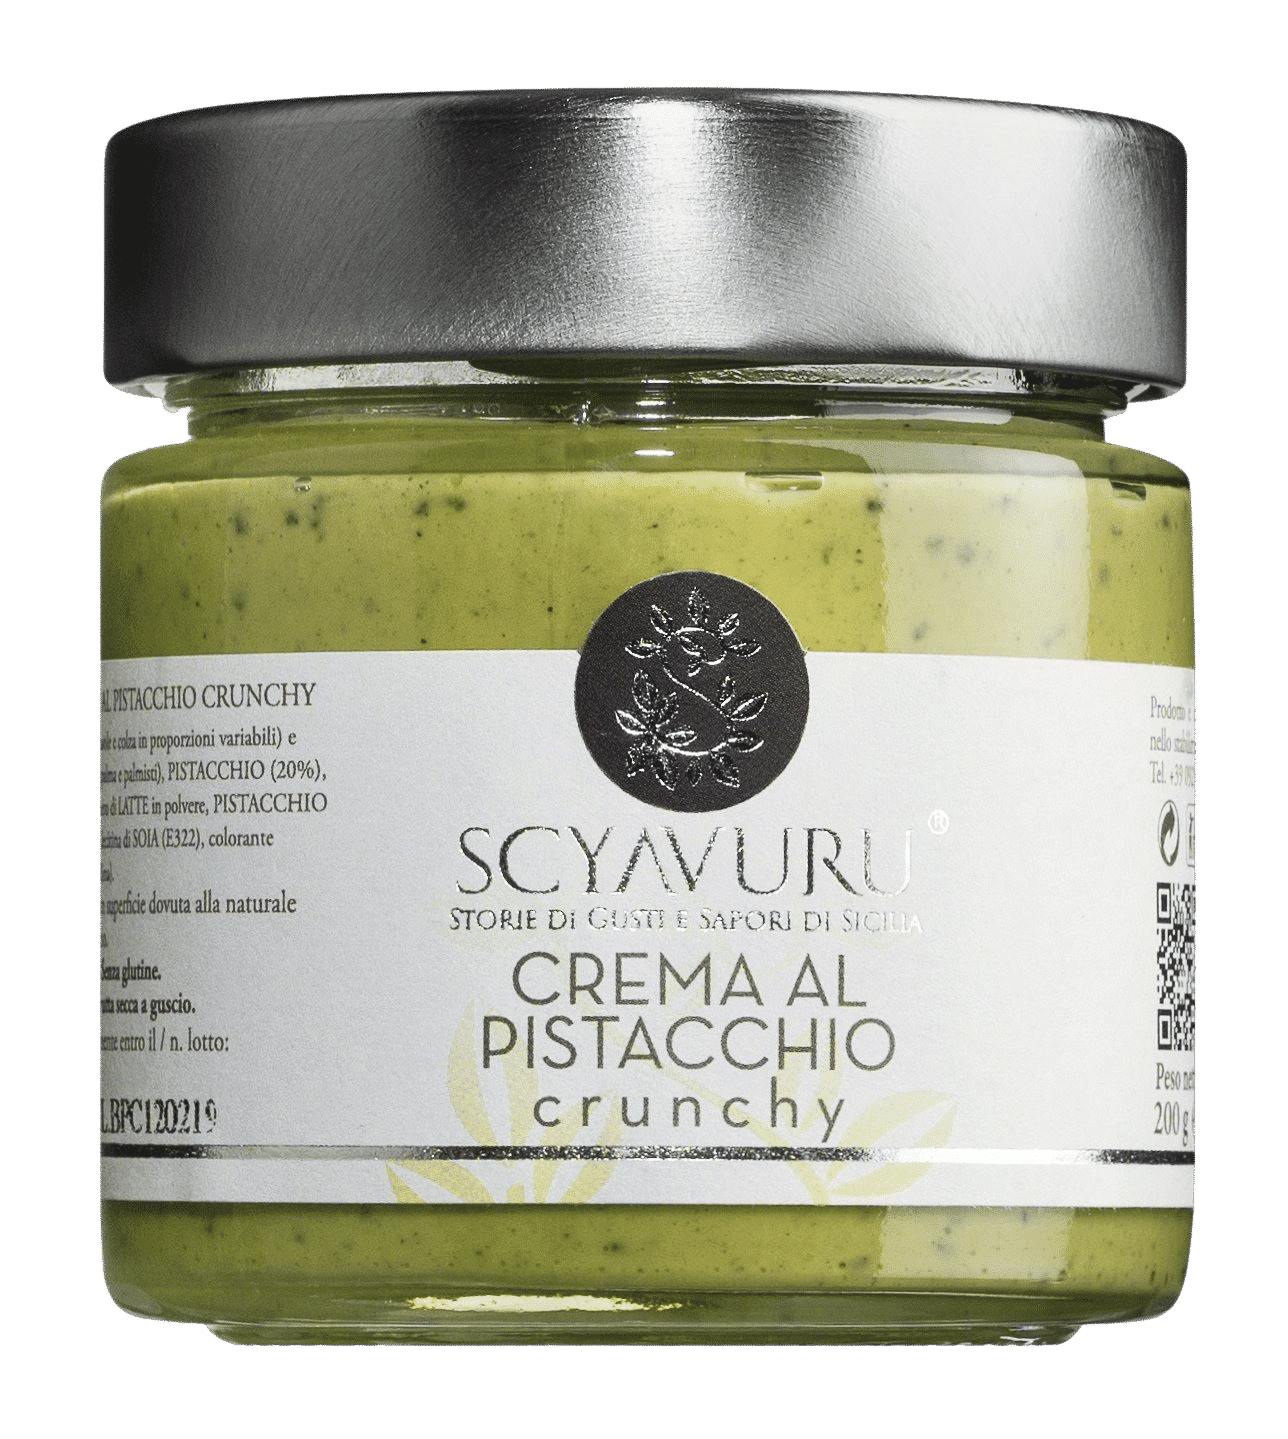 Scyavuru, Italien - Crema al pistacchio crunchy - Süße Pistaziencreme mit Crunch